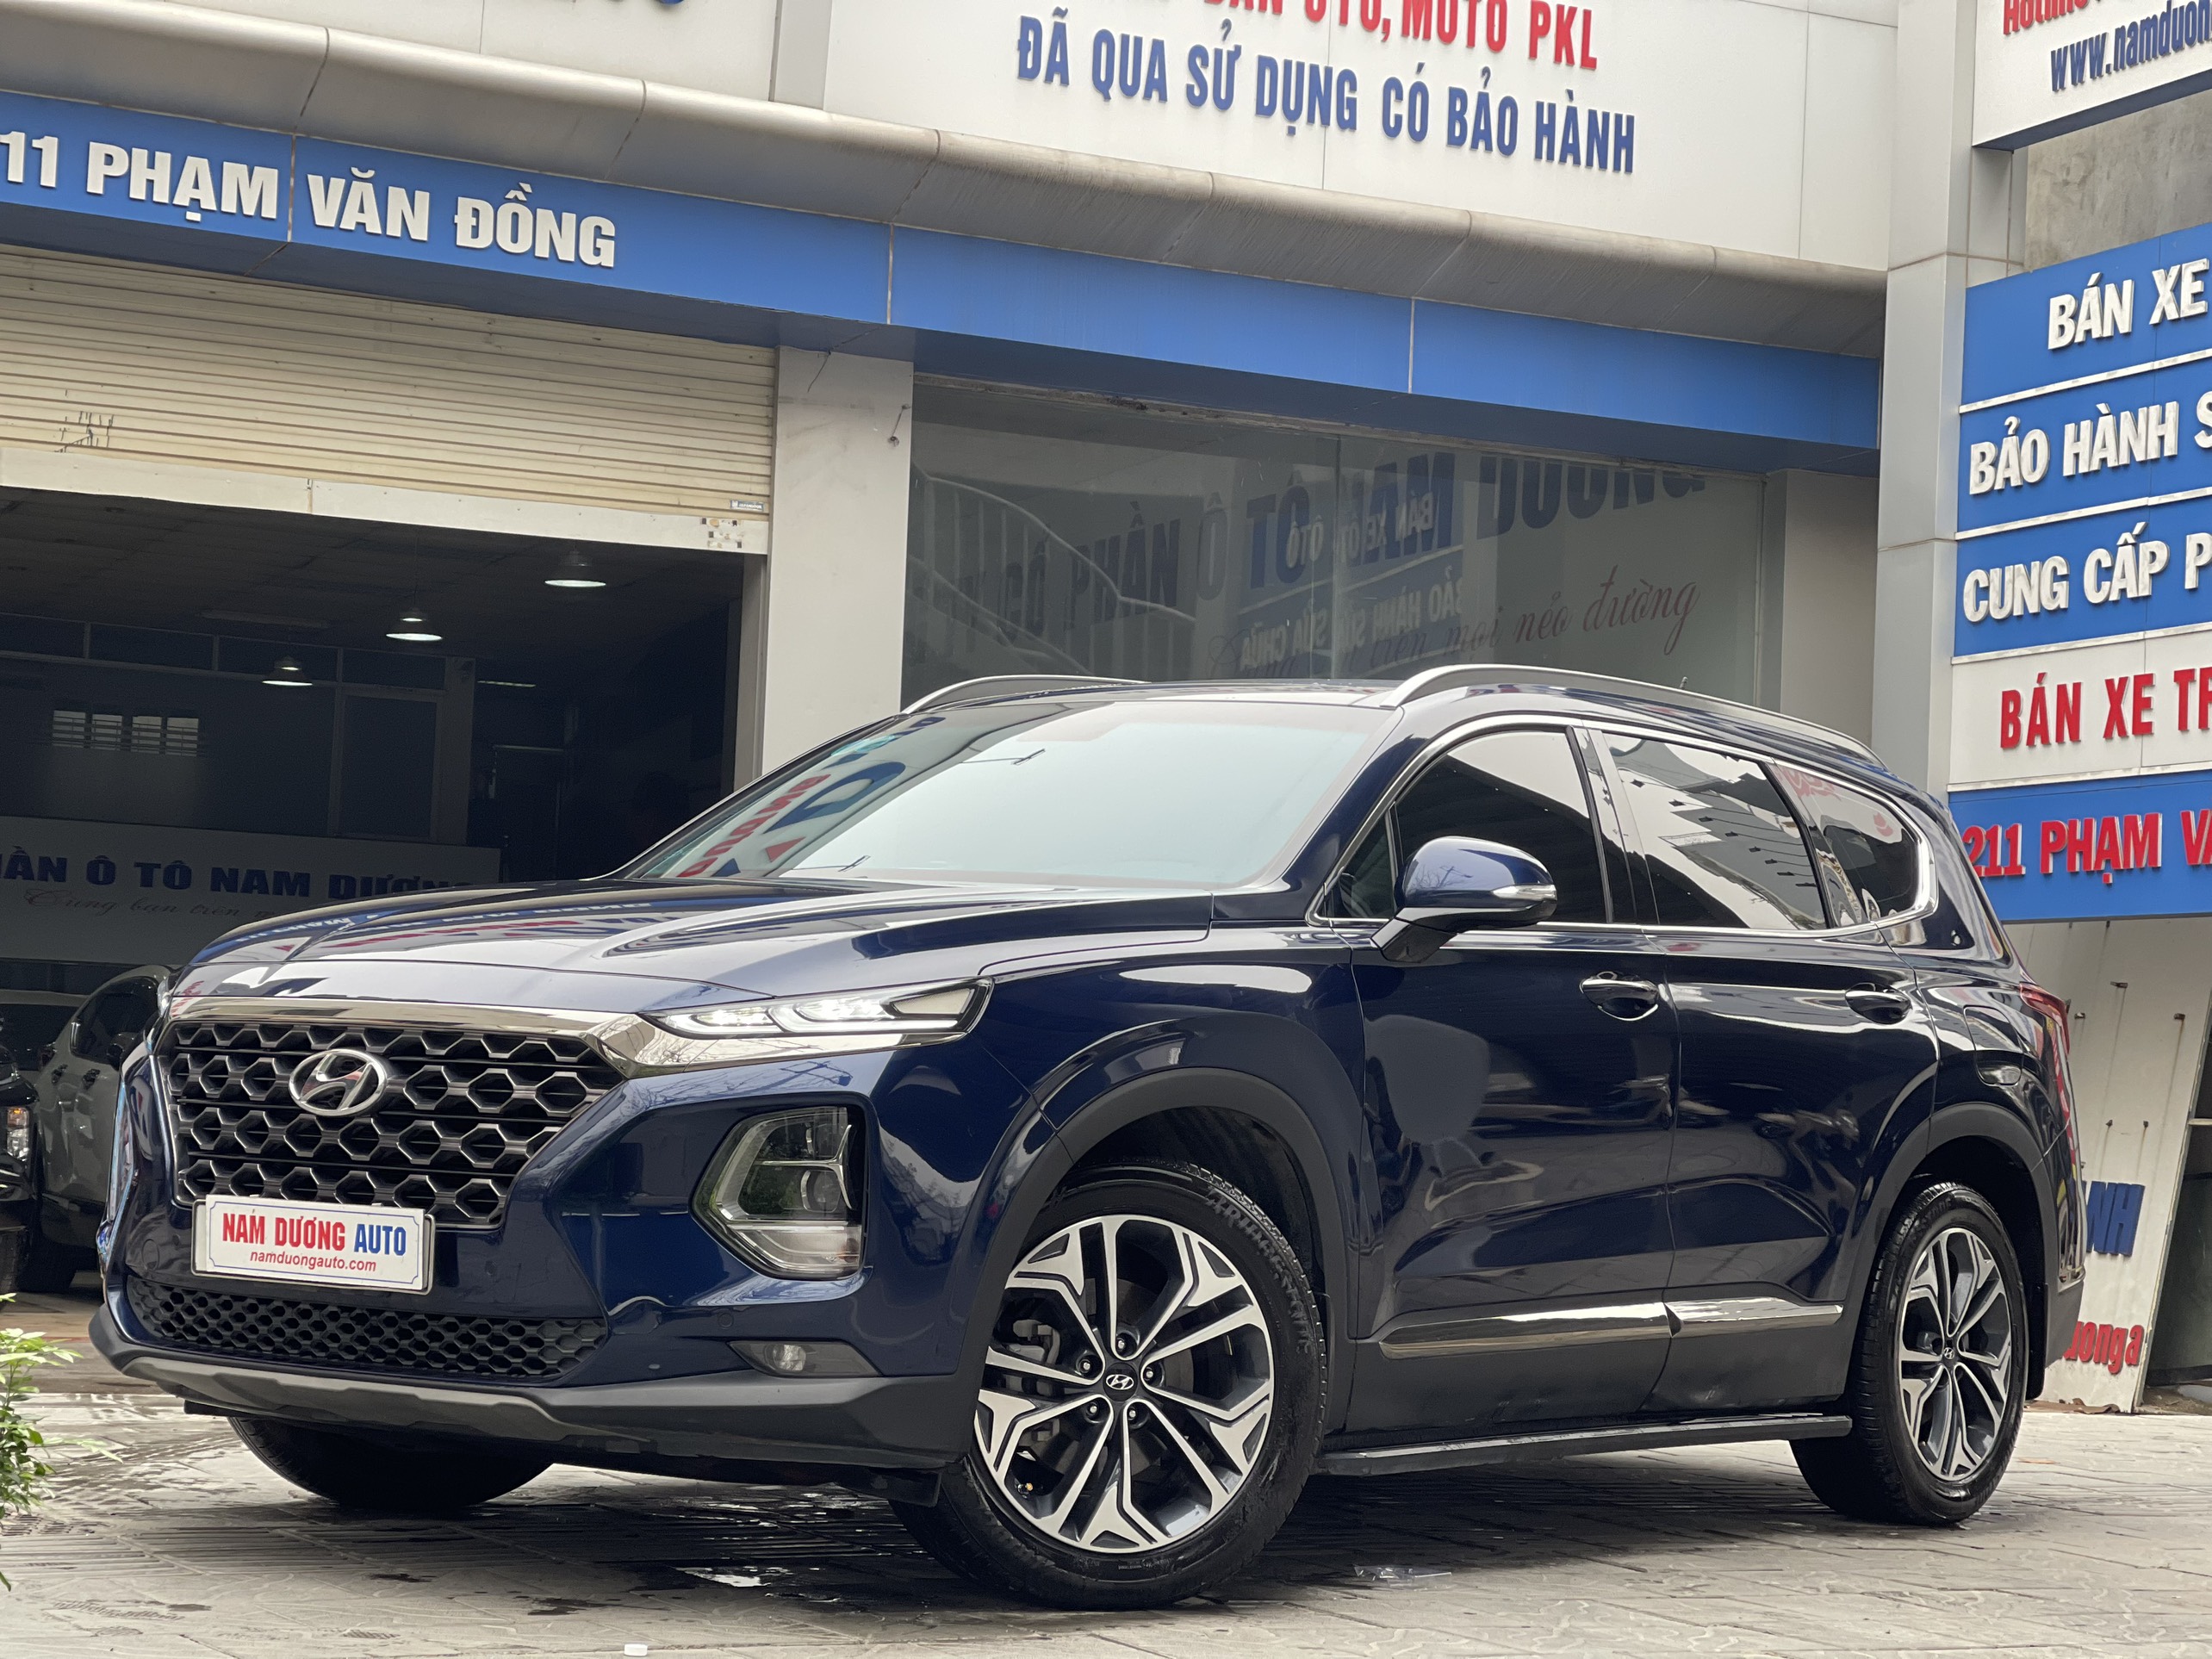 Hyundai Santafe 2.2 máy dầu bản đặc biệt 2019 rất mới